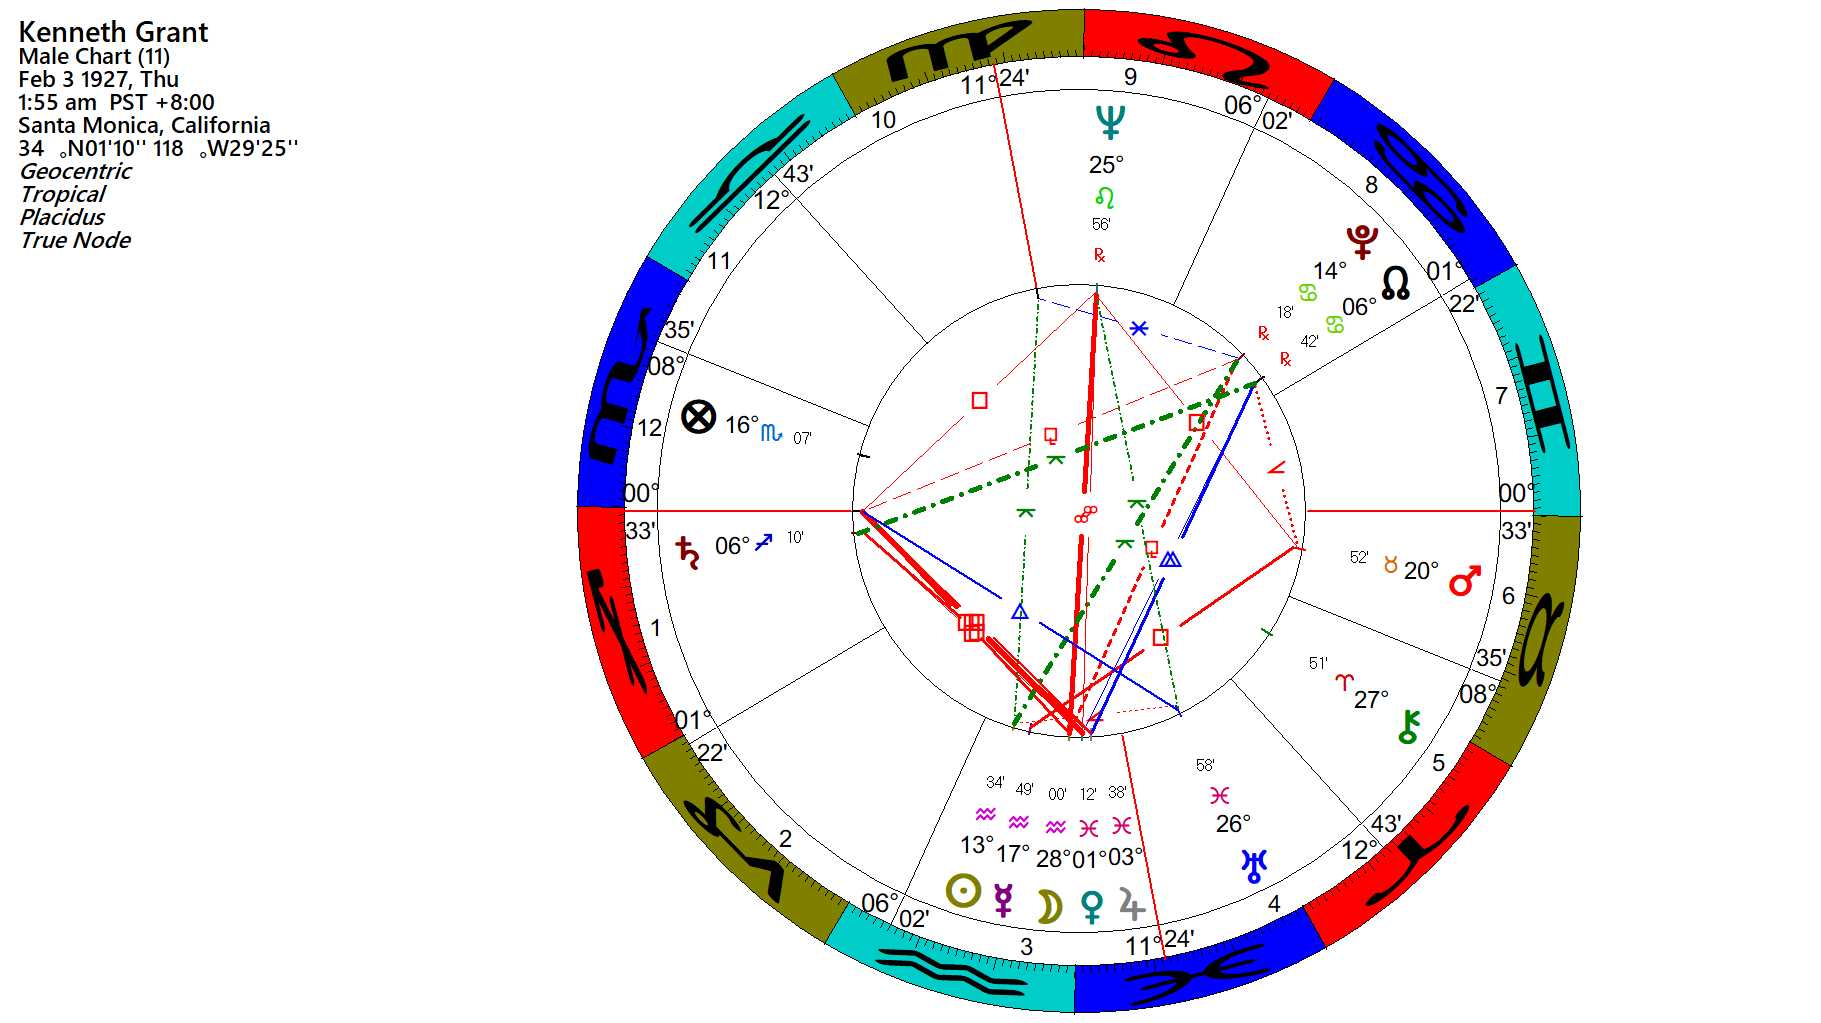 Sagittarius Chart